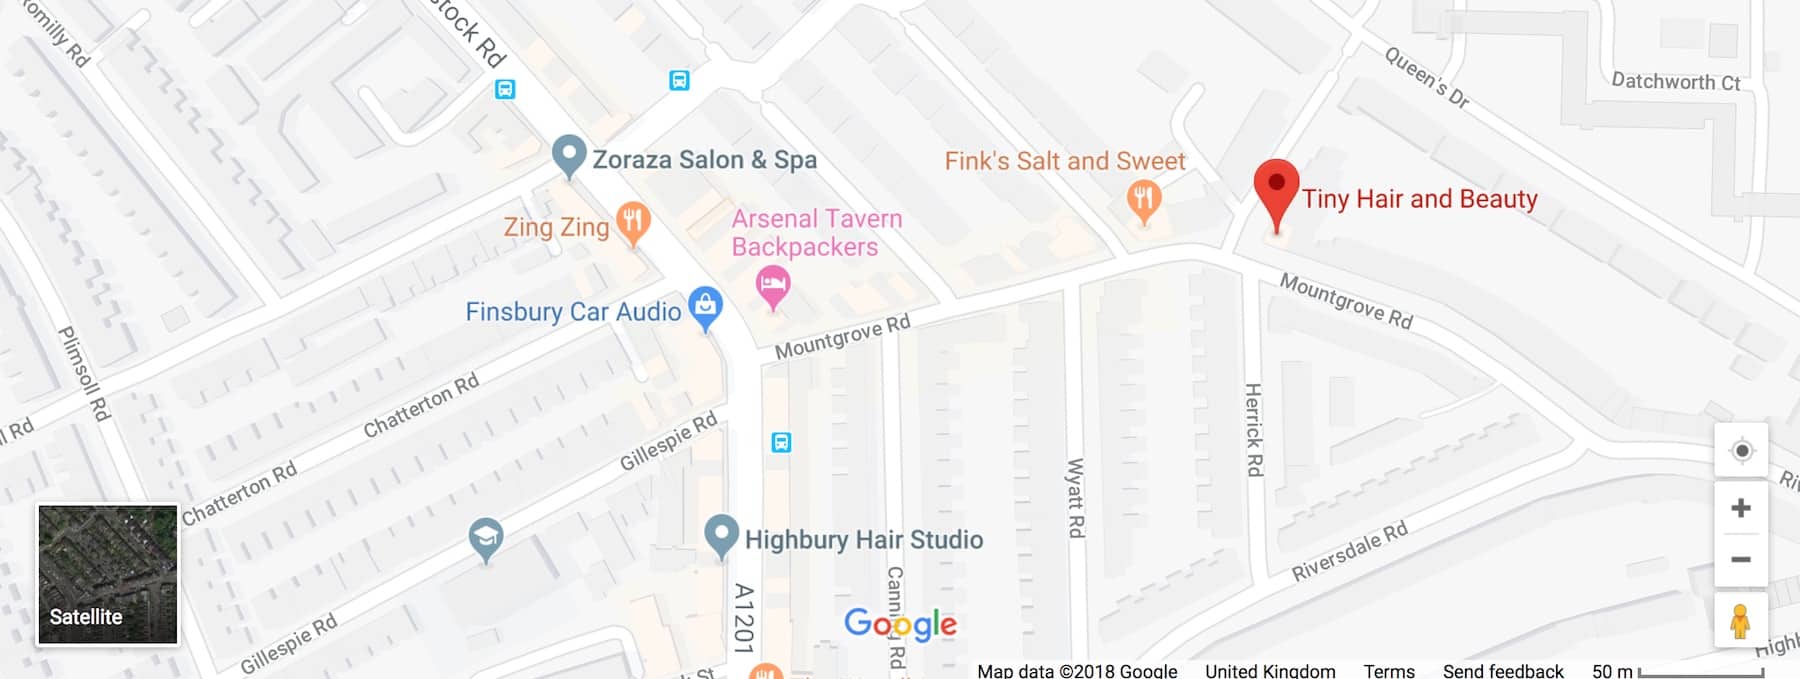 Tiny Hair and Beauty Google Maps